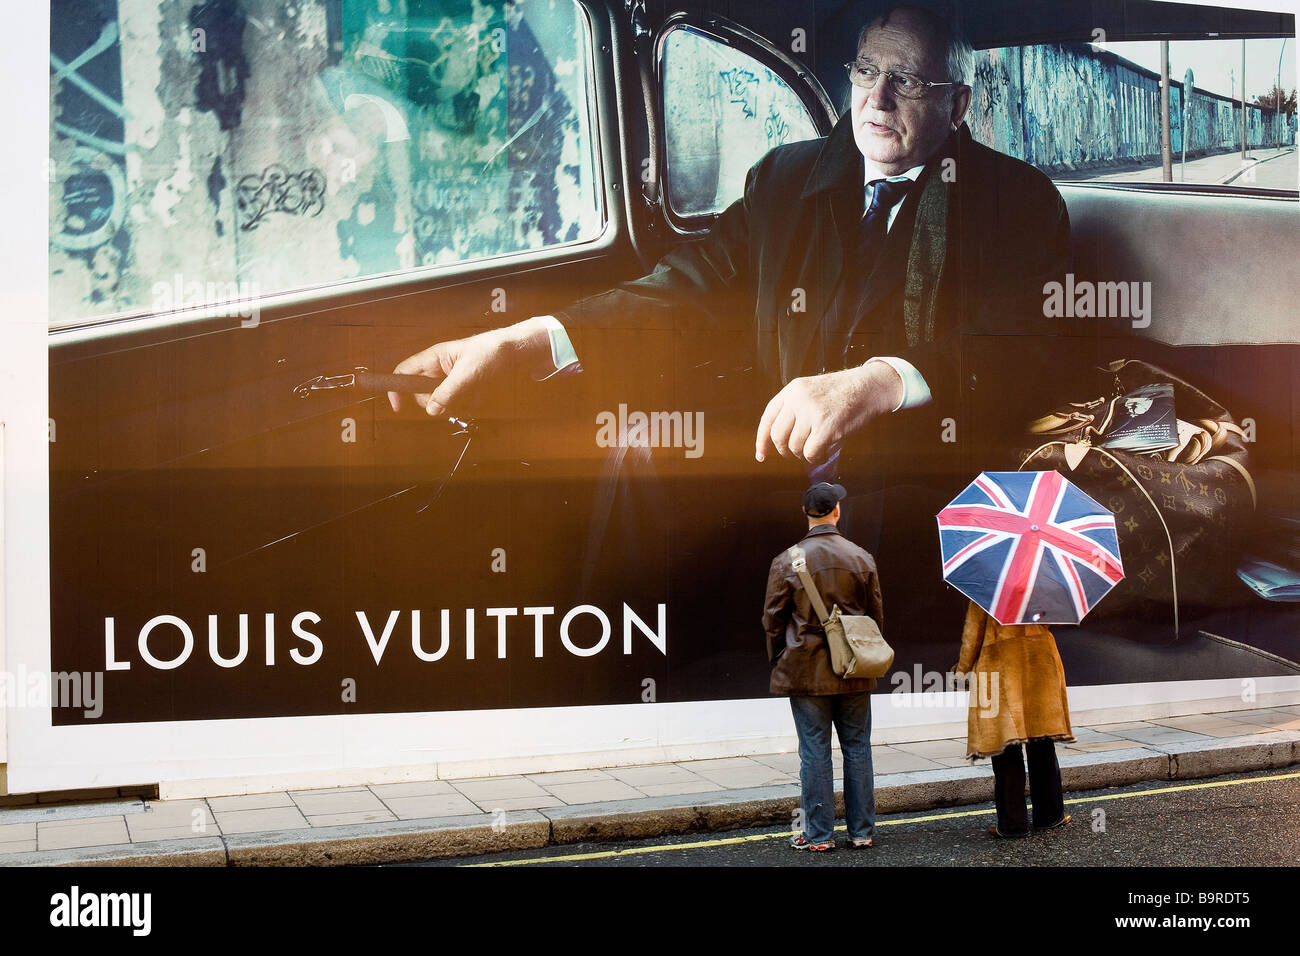 Louis Vuitton Ads Poster G337595 